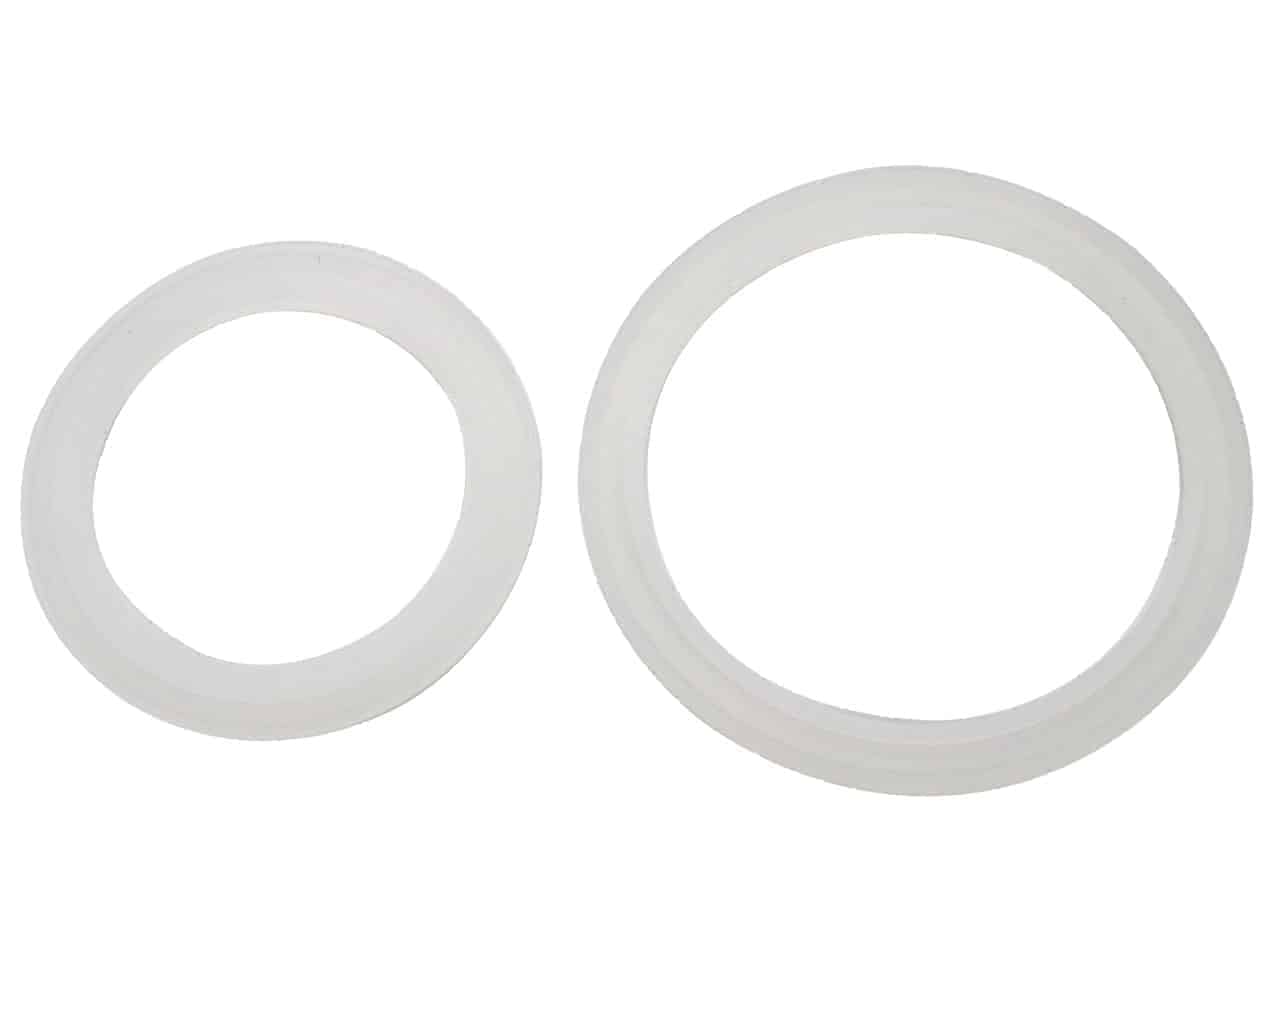 platinum-silicone-sealing-rings-seals-gaskets-regular-wide-mouth-mason-jar-lids